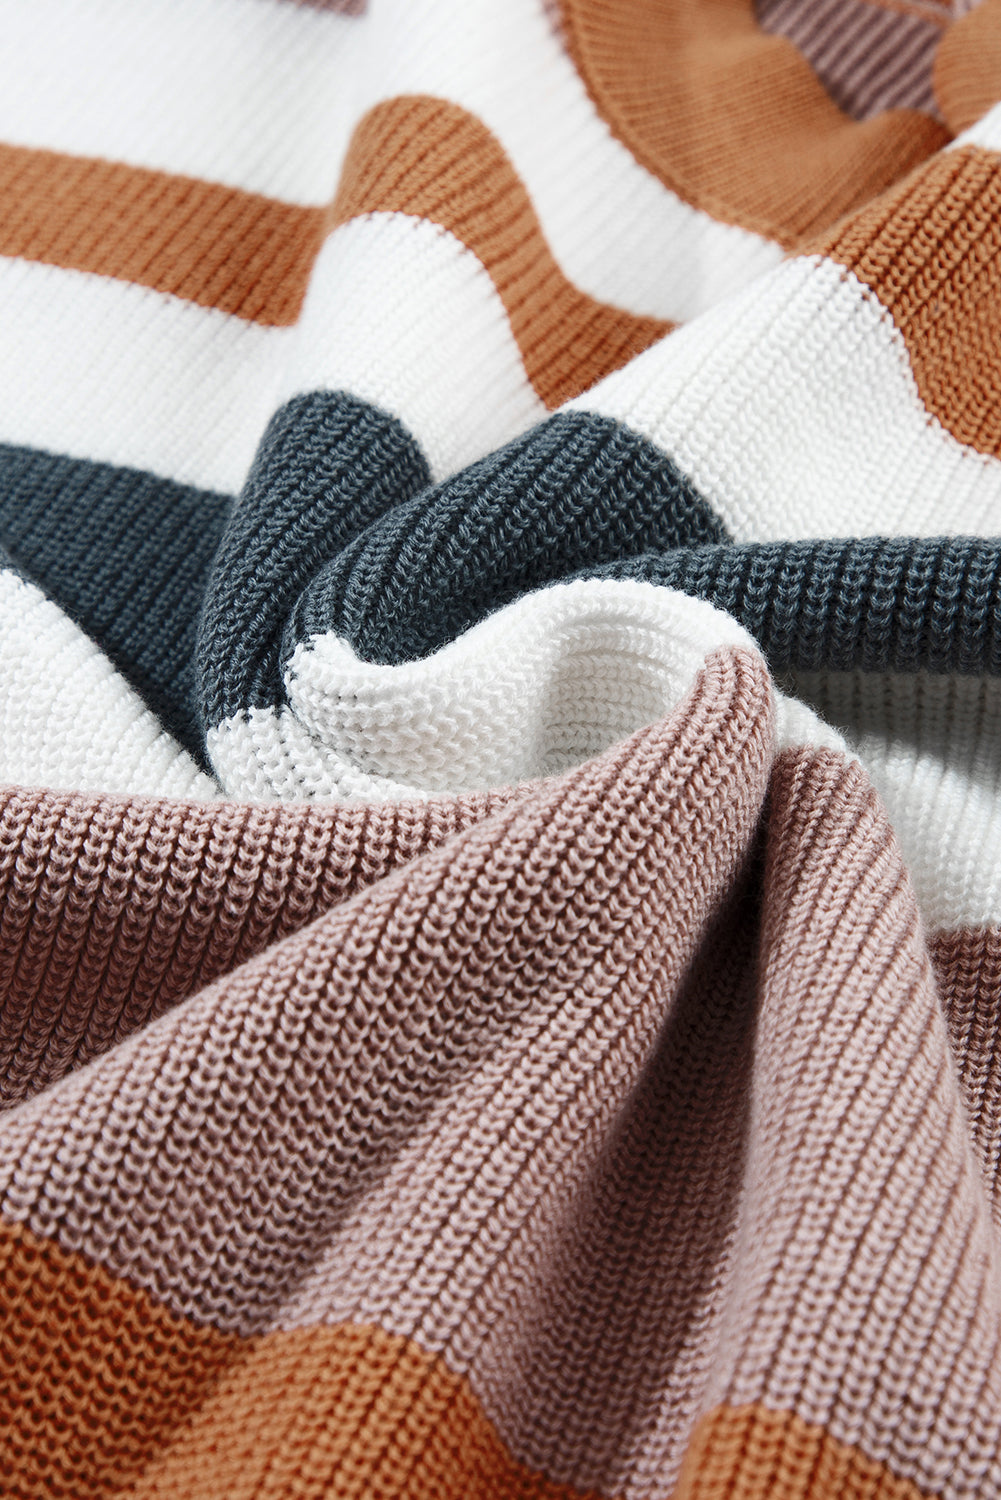 Pleteni pulover majice s okruglim izrezom u boji devine pruge